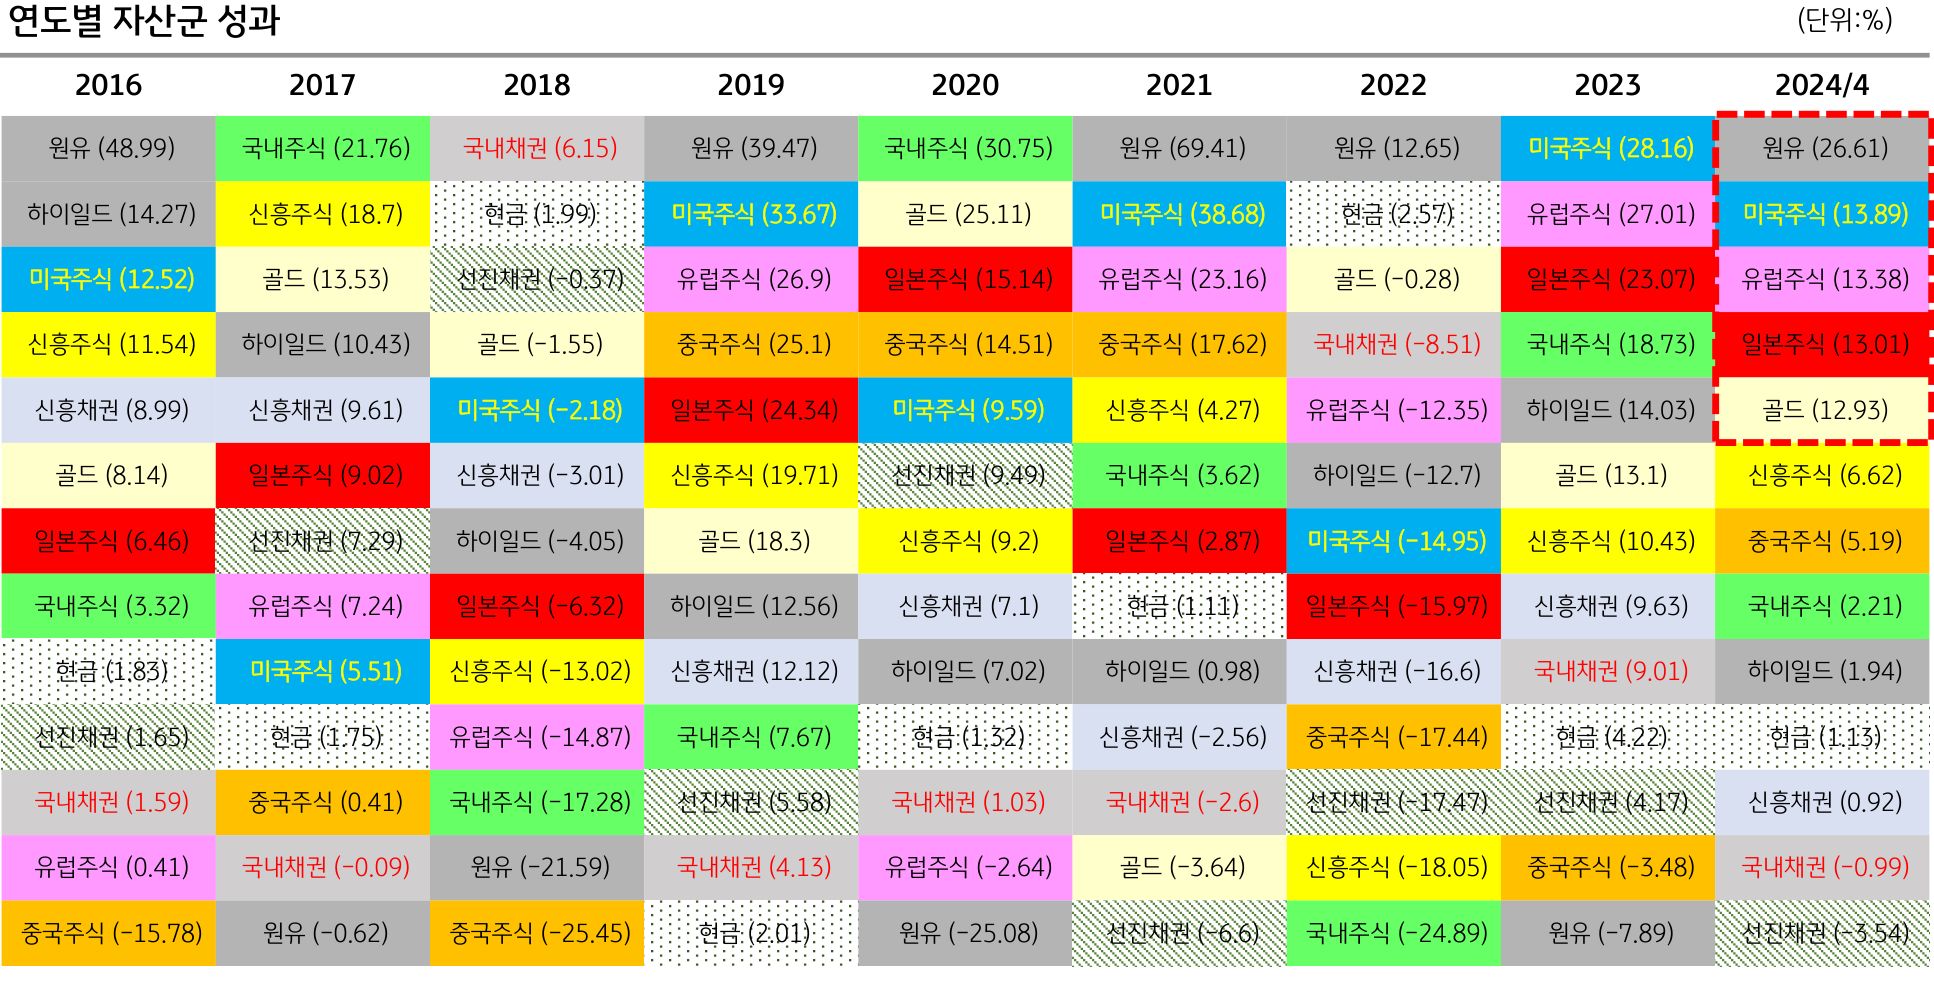 '2016년'부터 '2024년 4분기'까지 자산군 성과를 나타내는 이미지. 여러 색깔로 표시되어 있다.